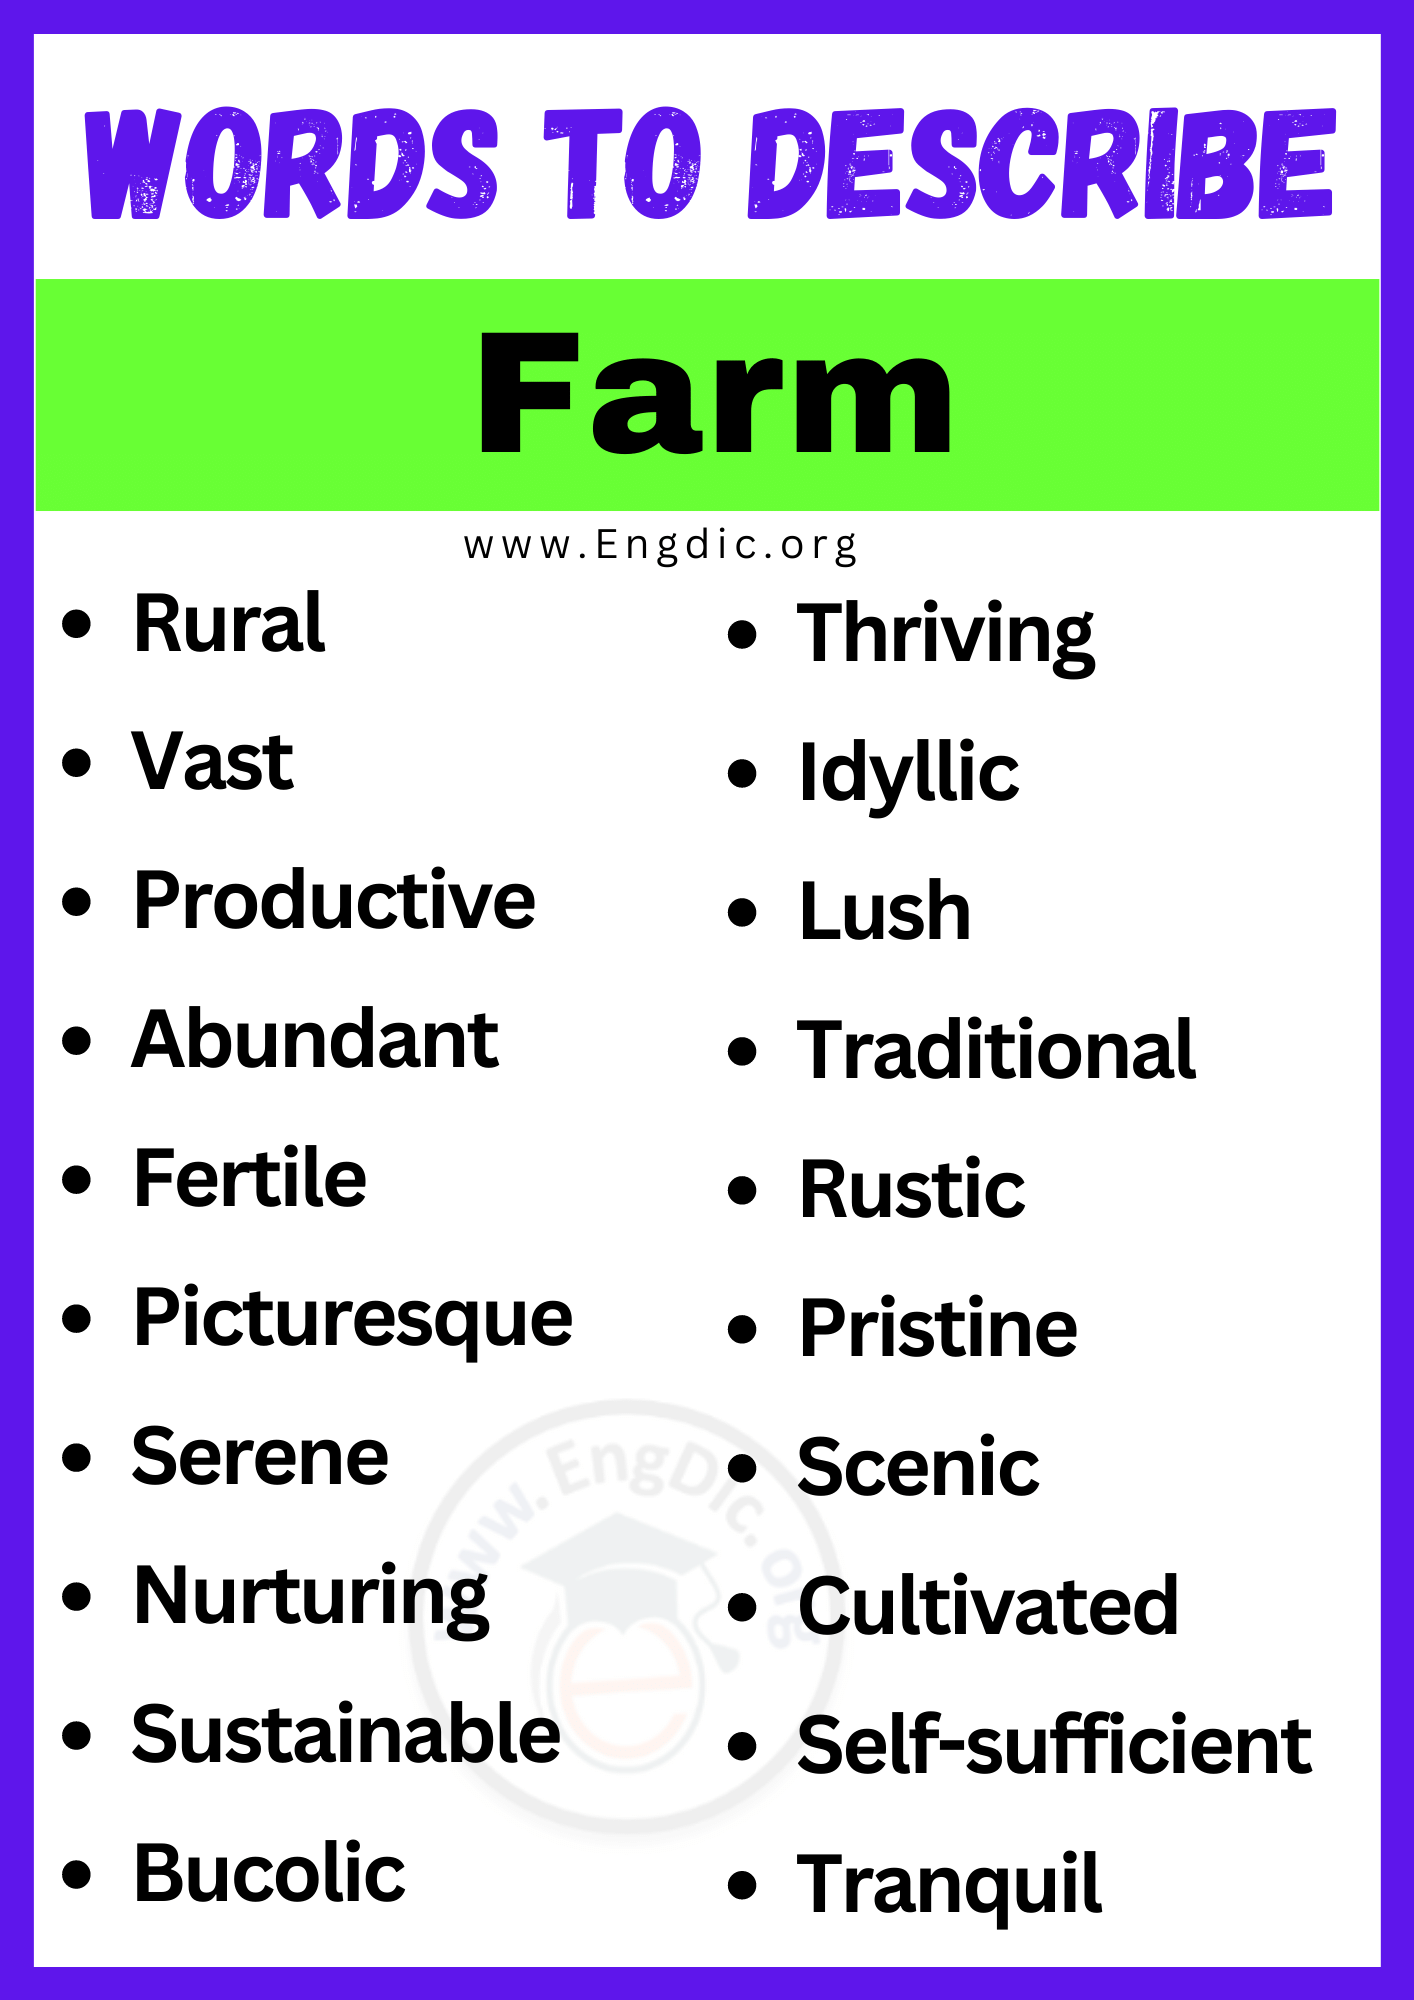 Words to Describe Farm